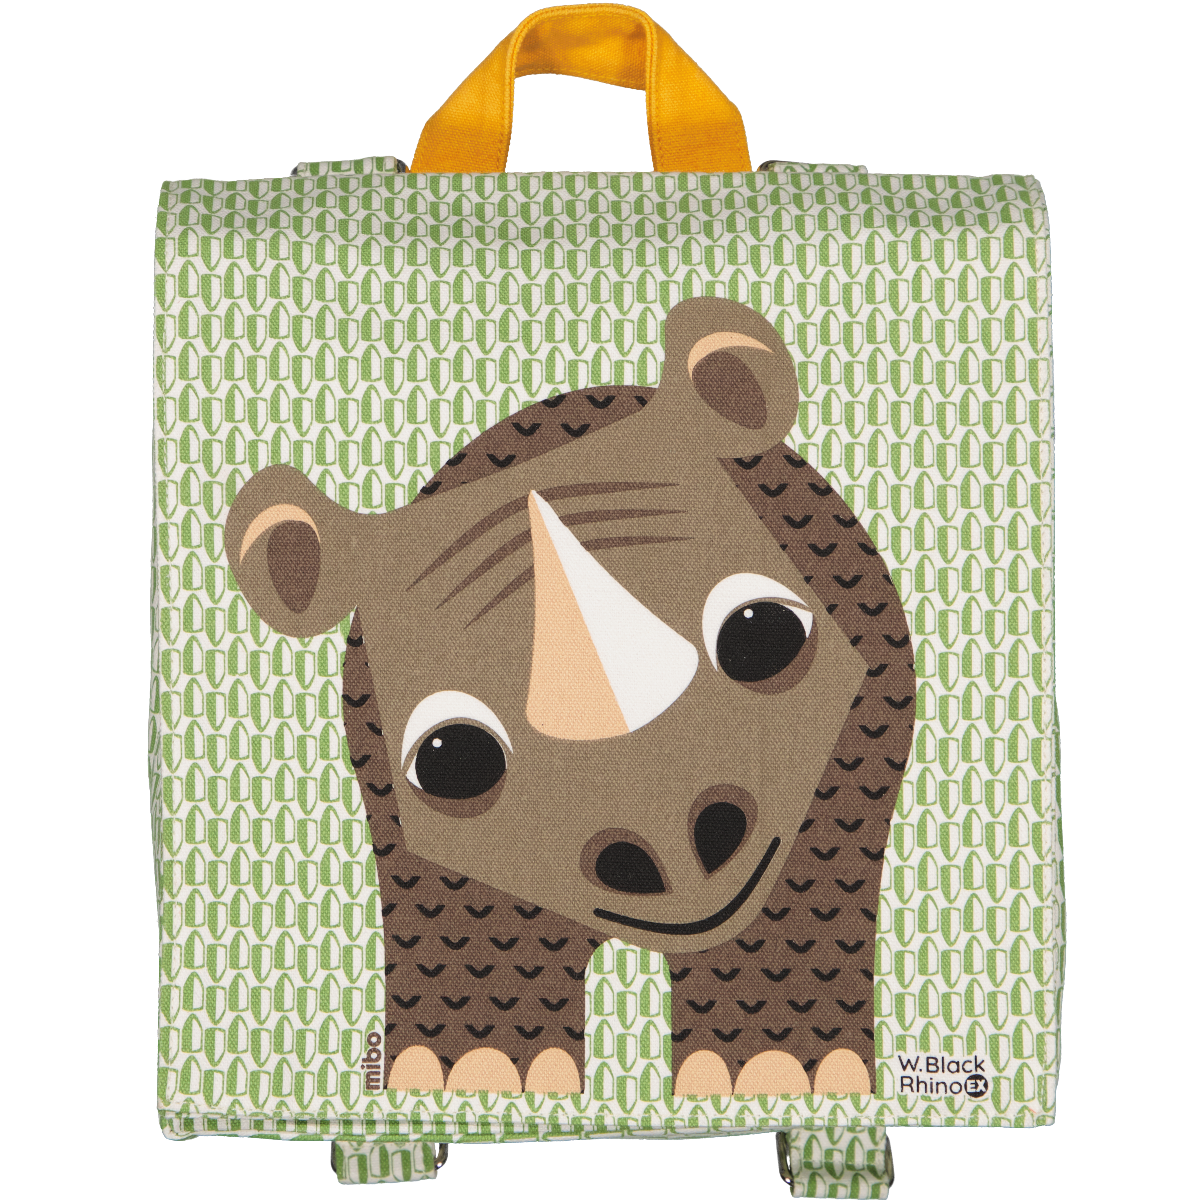 Rhinoceros Backpack